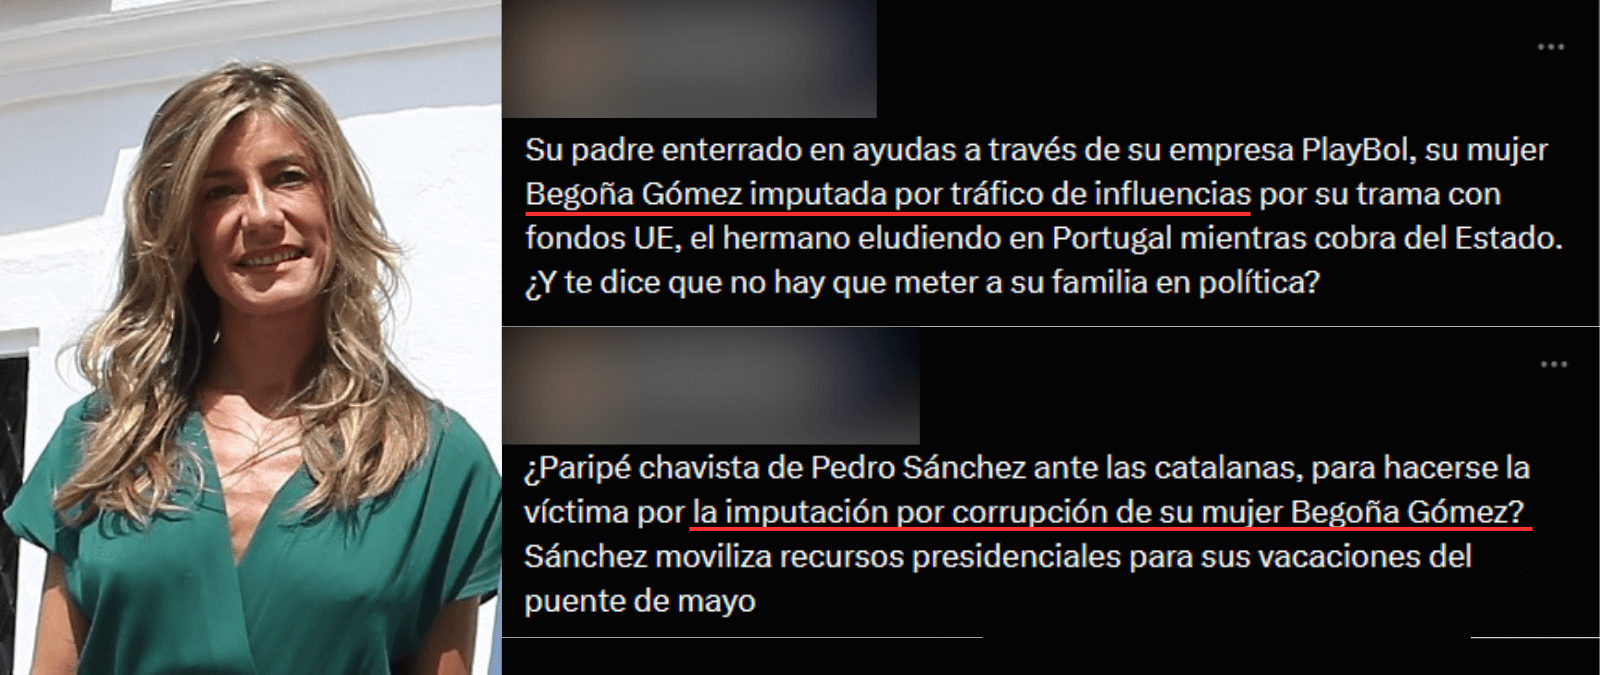 Begoña Gómez y su situación judicial: no hay pruebas de que esté imputada y el TSJM sólo confirma que se han abierto diligencias de investigación (a 29 de abril de 2024)